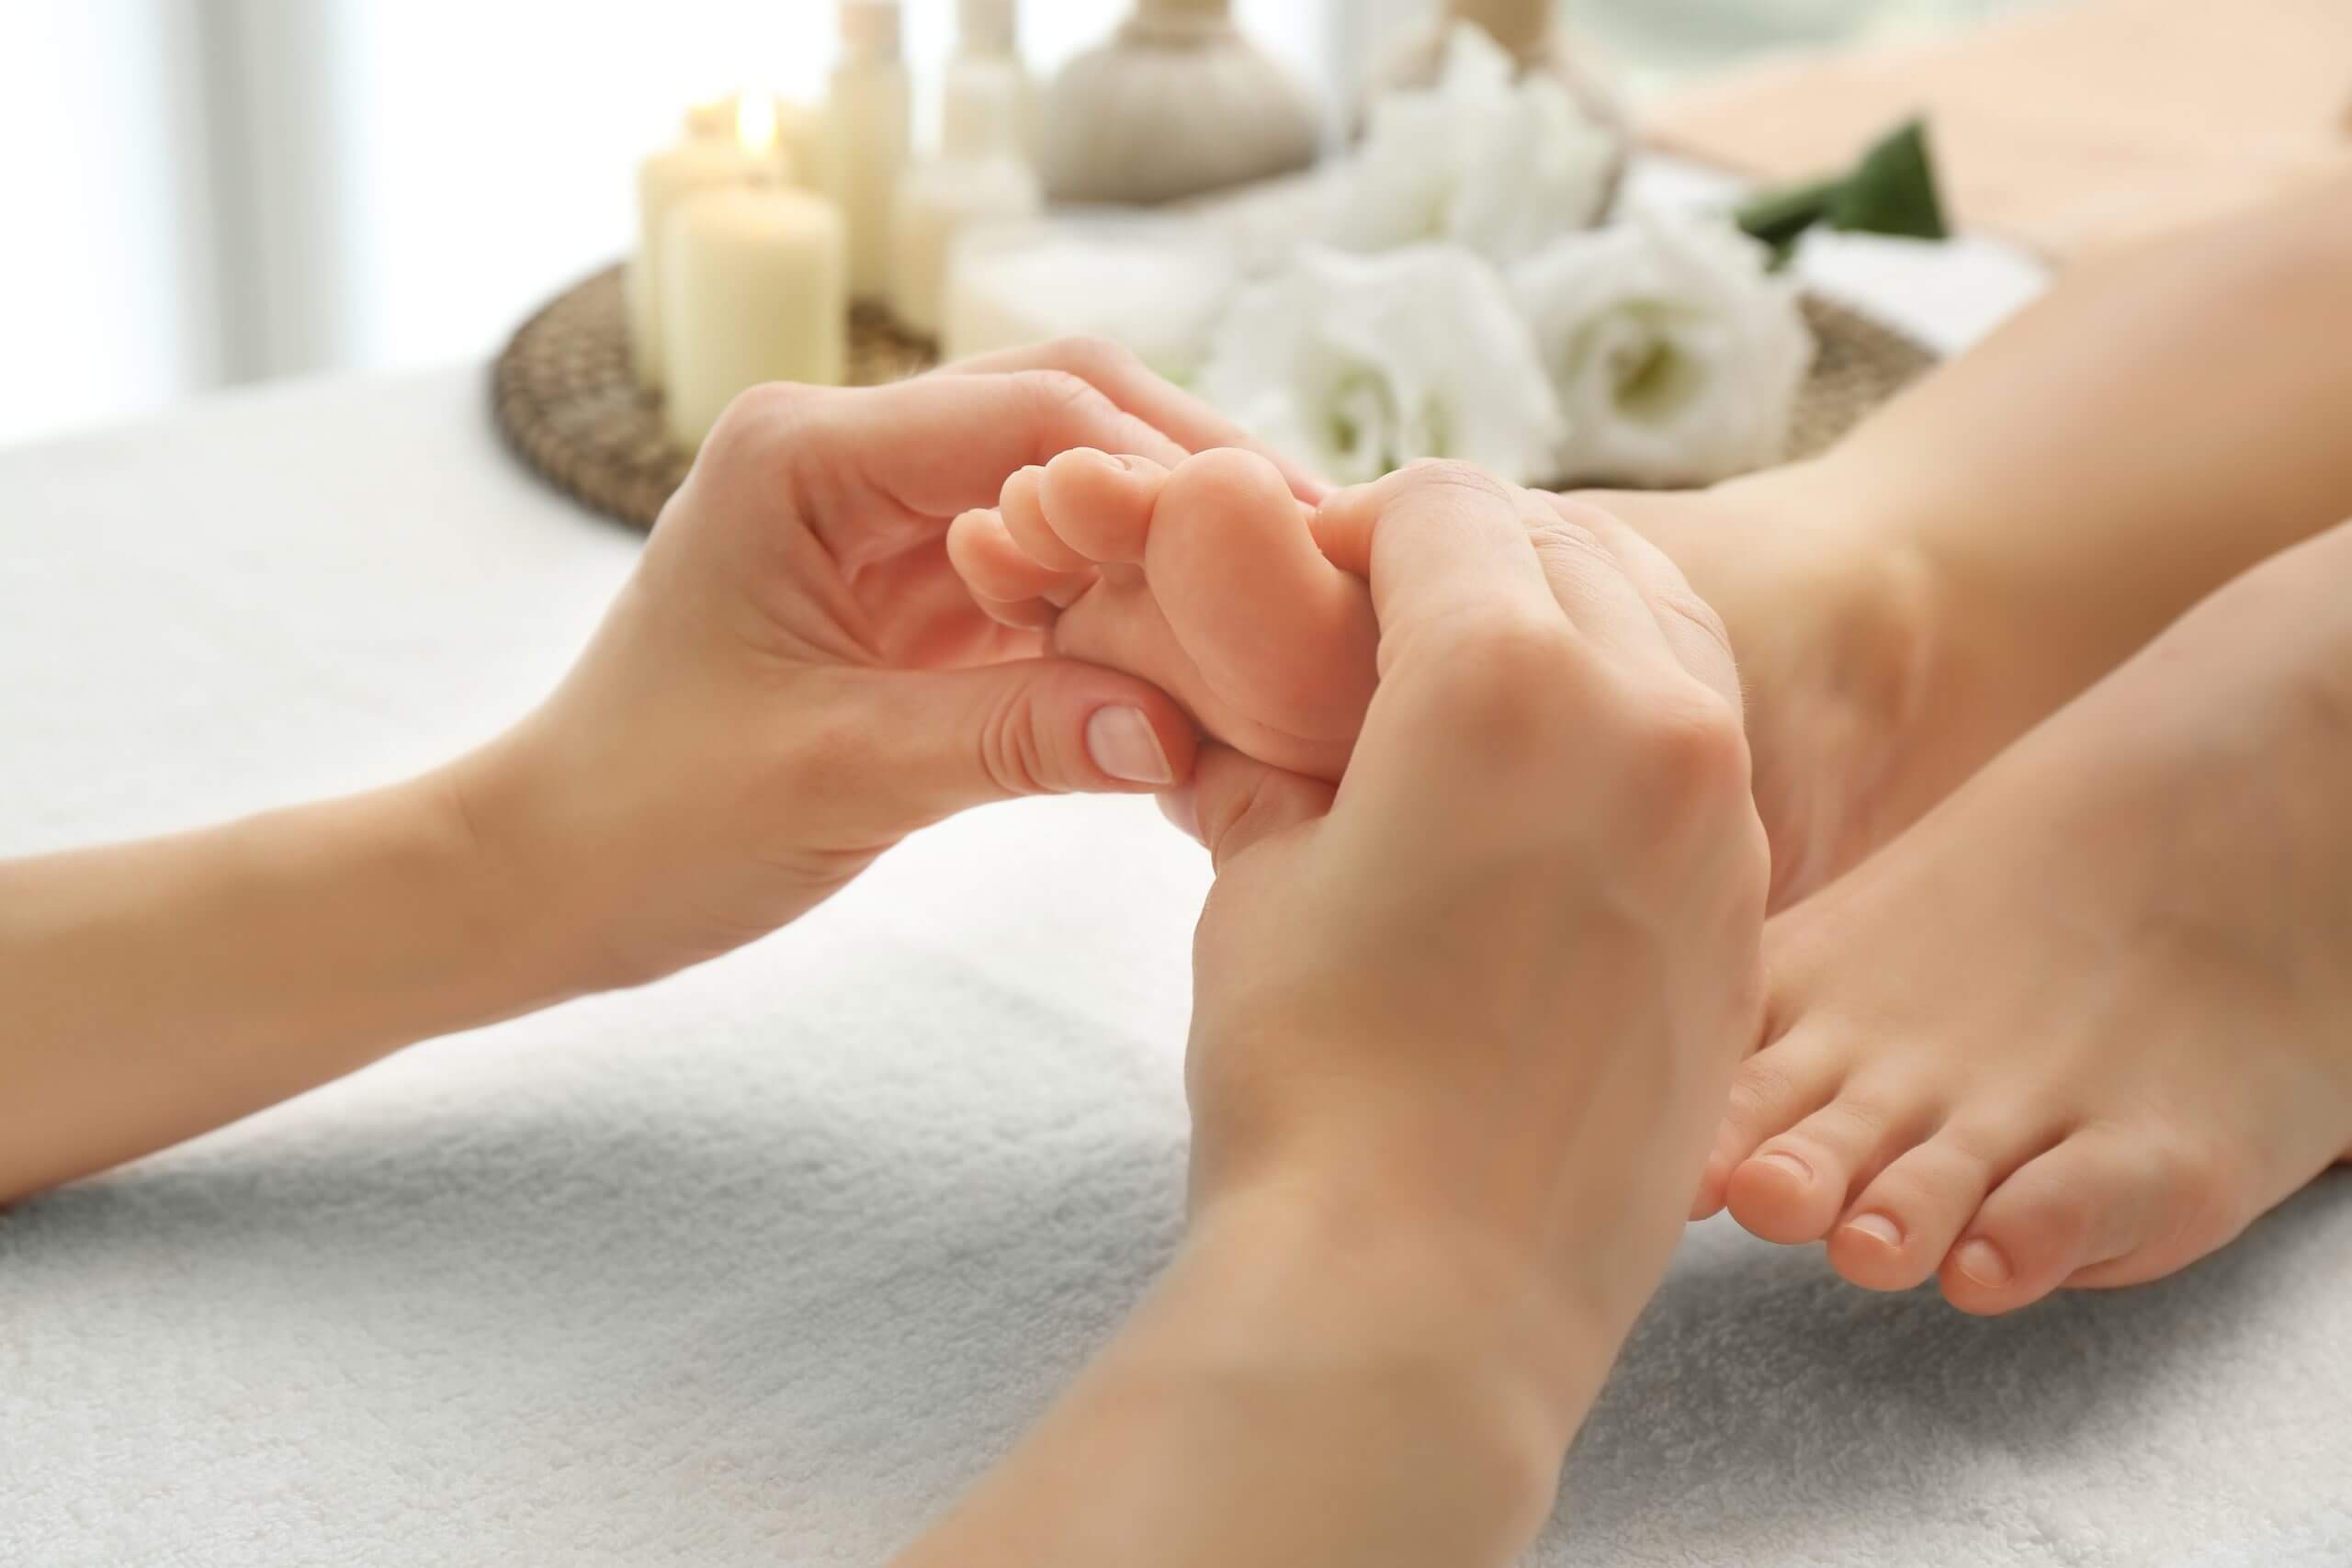 Foot Reflexology Using Tranquil Massage Oil